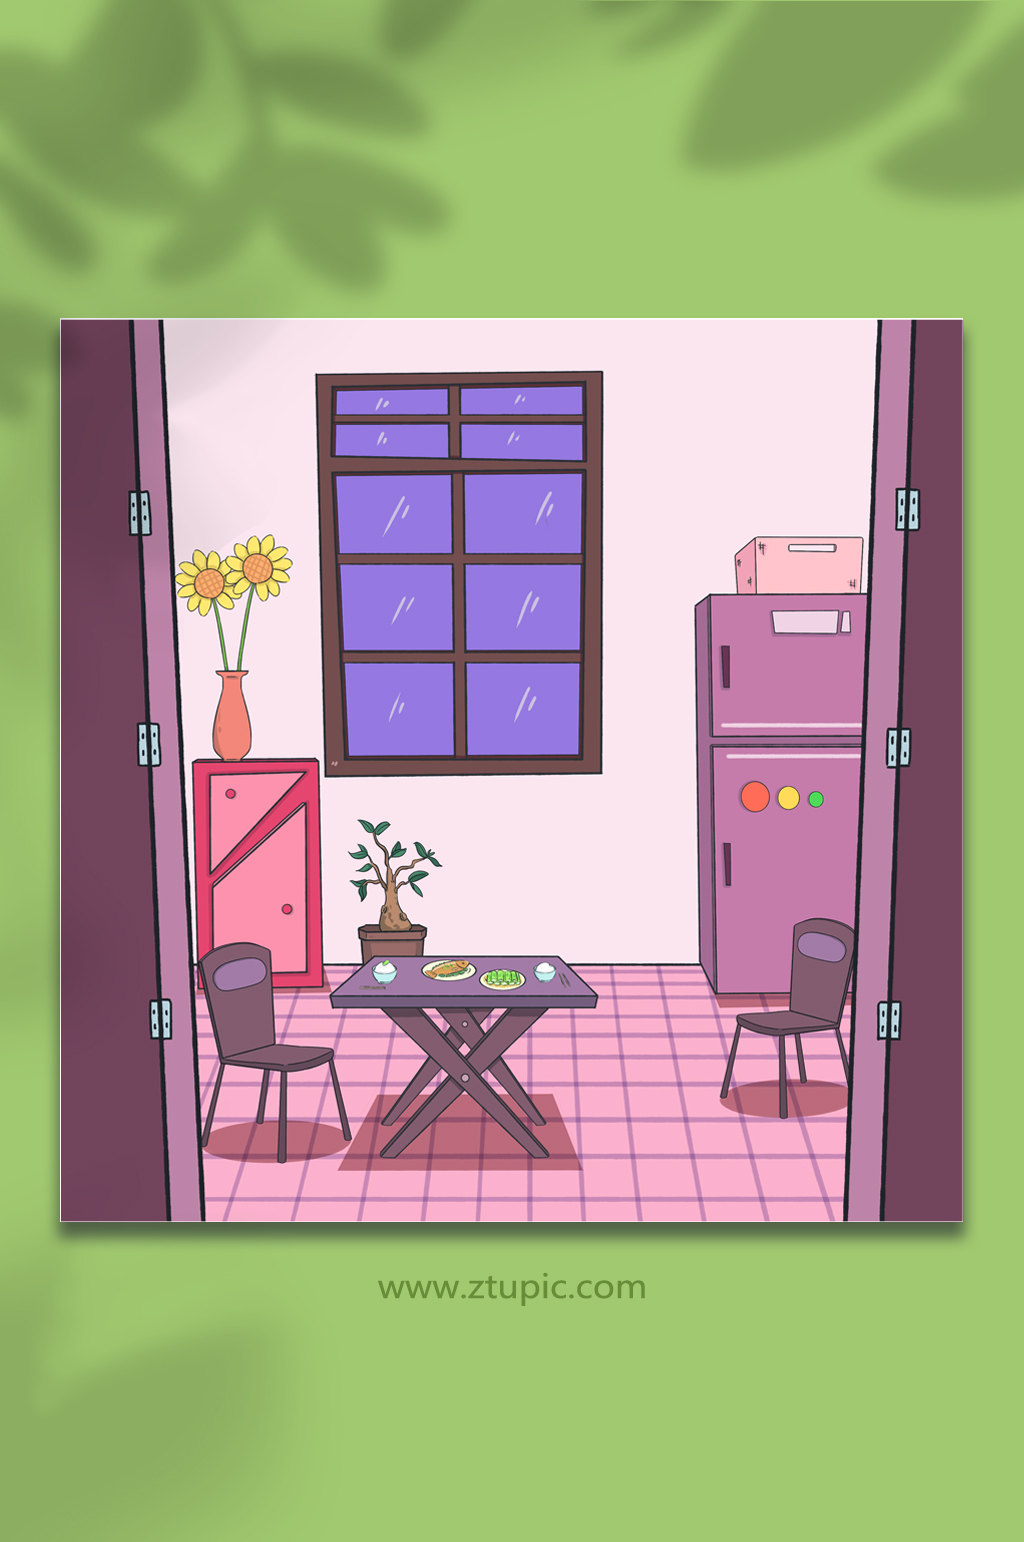 紫色居家室内漫画免抠背景